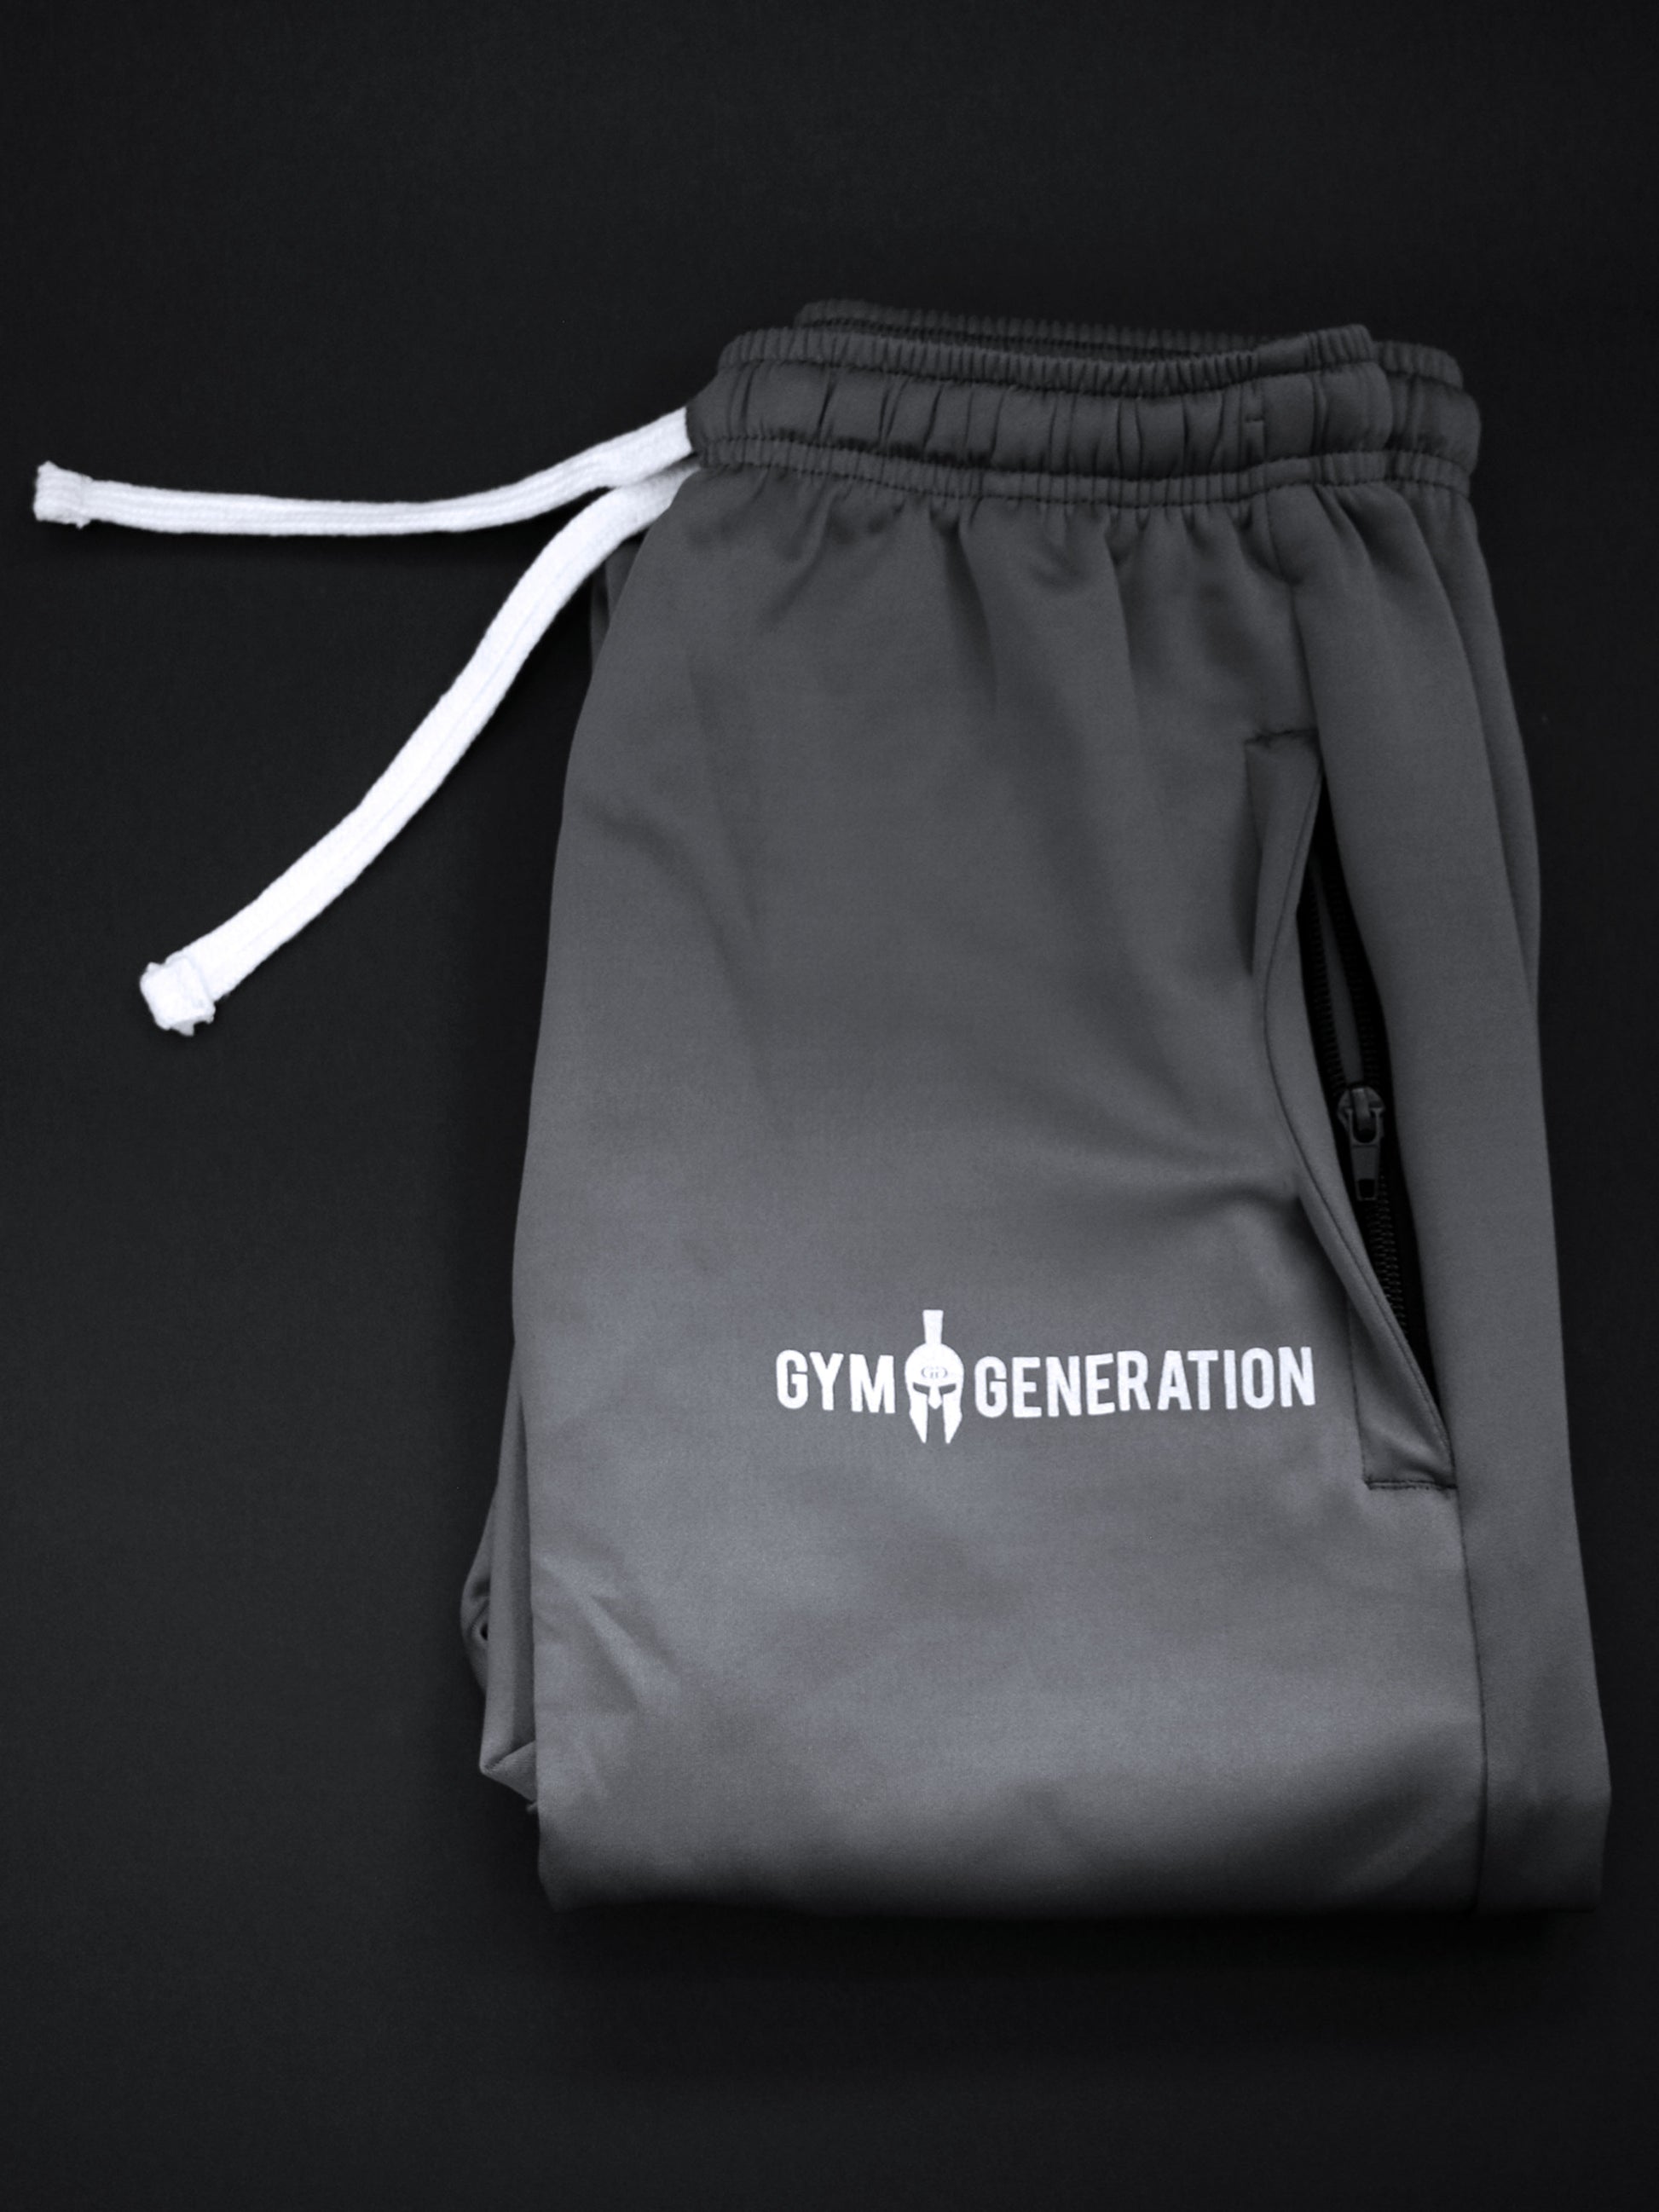 Gym Generation Trainer Pants in Grau, die ultimativen Komfort und Stil für jedes Workout bieten.